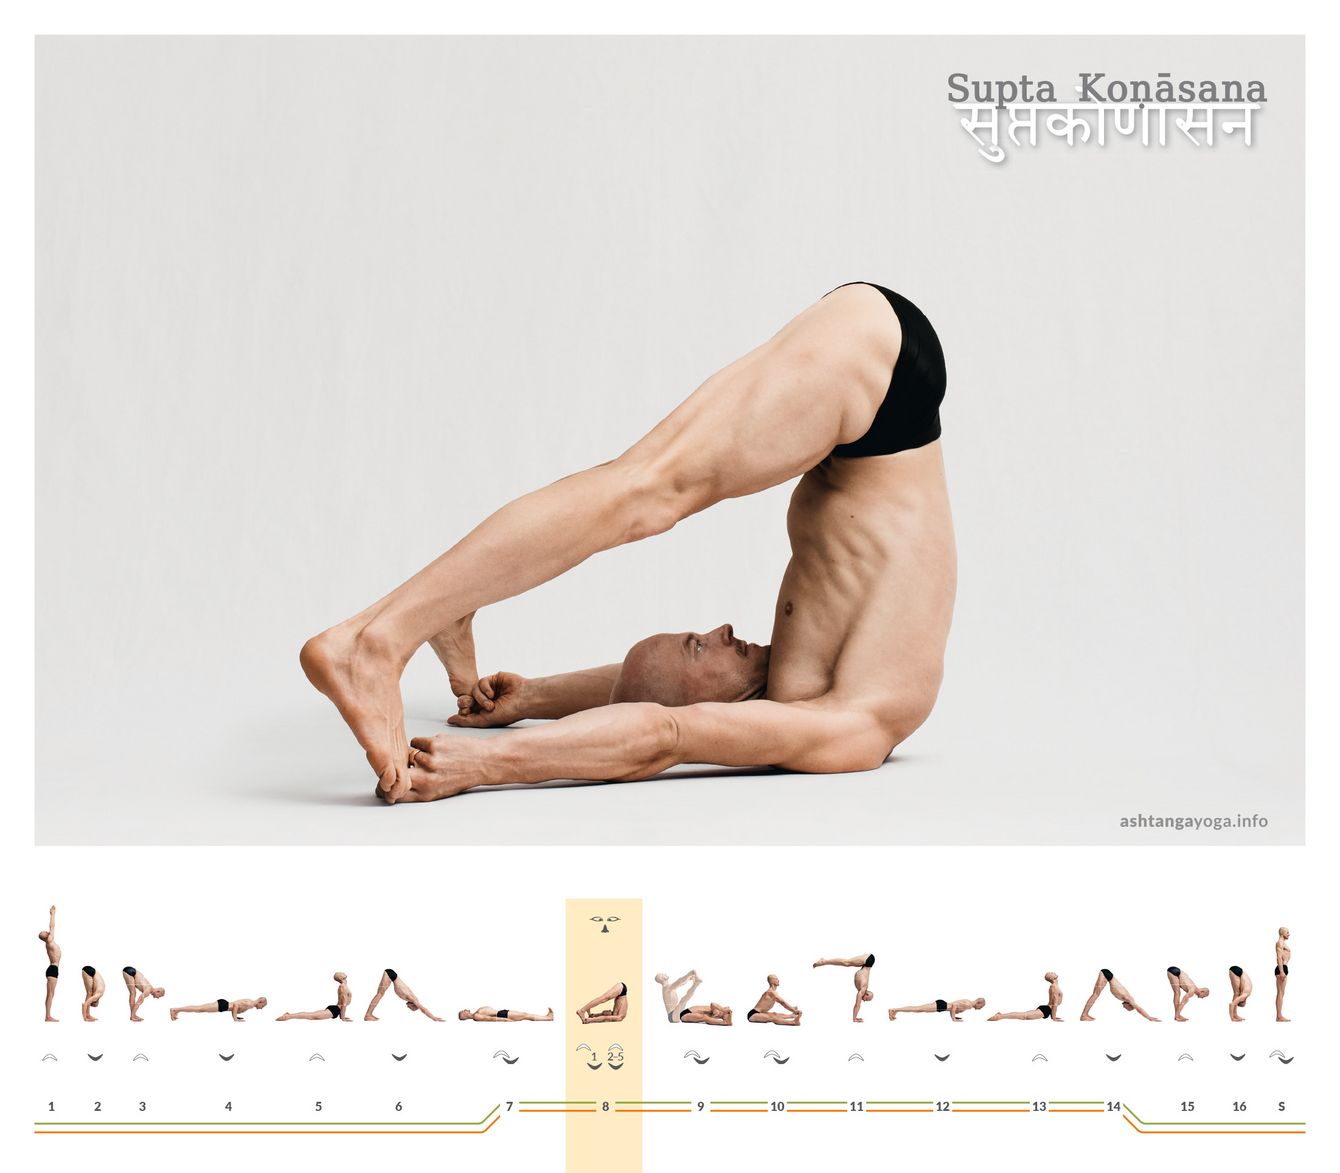 Der “Liegende Winkel”, Supta Konasana, ist eine Rücken-Liegende-Haltung mit gehobenem Becken. Beide Beine sind weit gespreizt und gestreckt, während Du mit zwei Fingern Deine großen Zehen greifst.